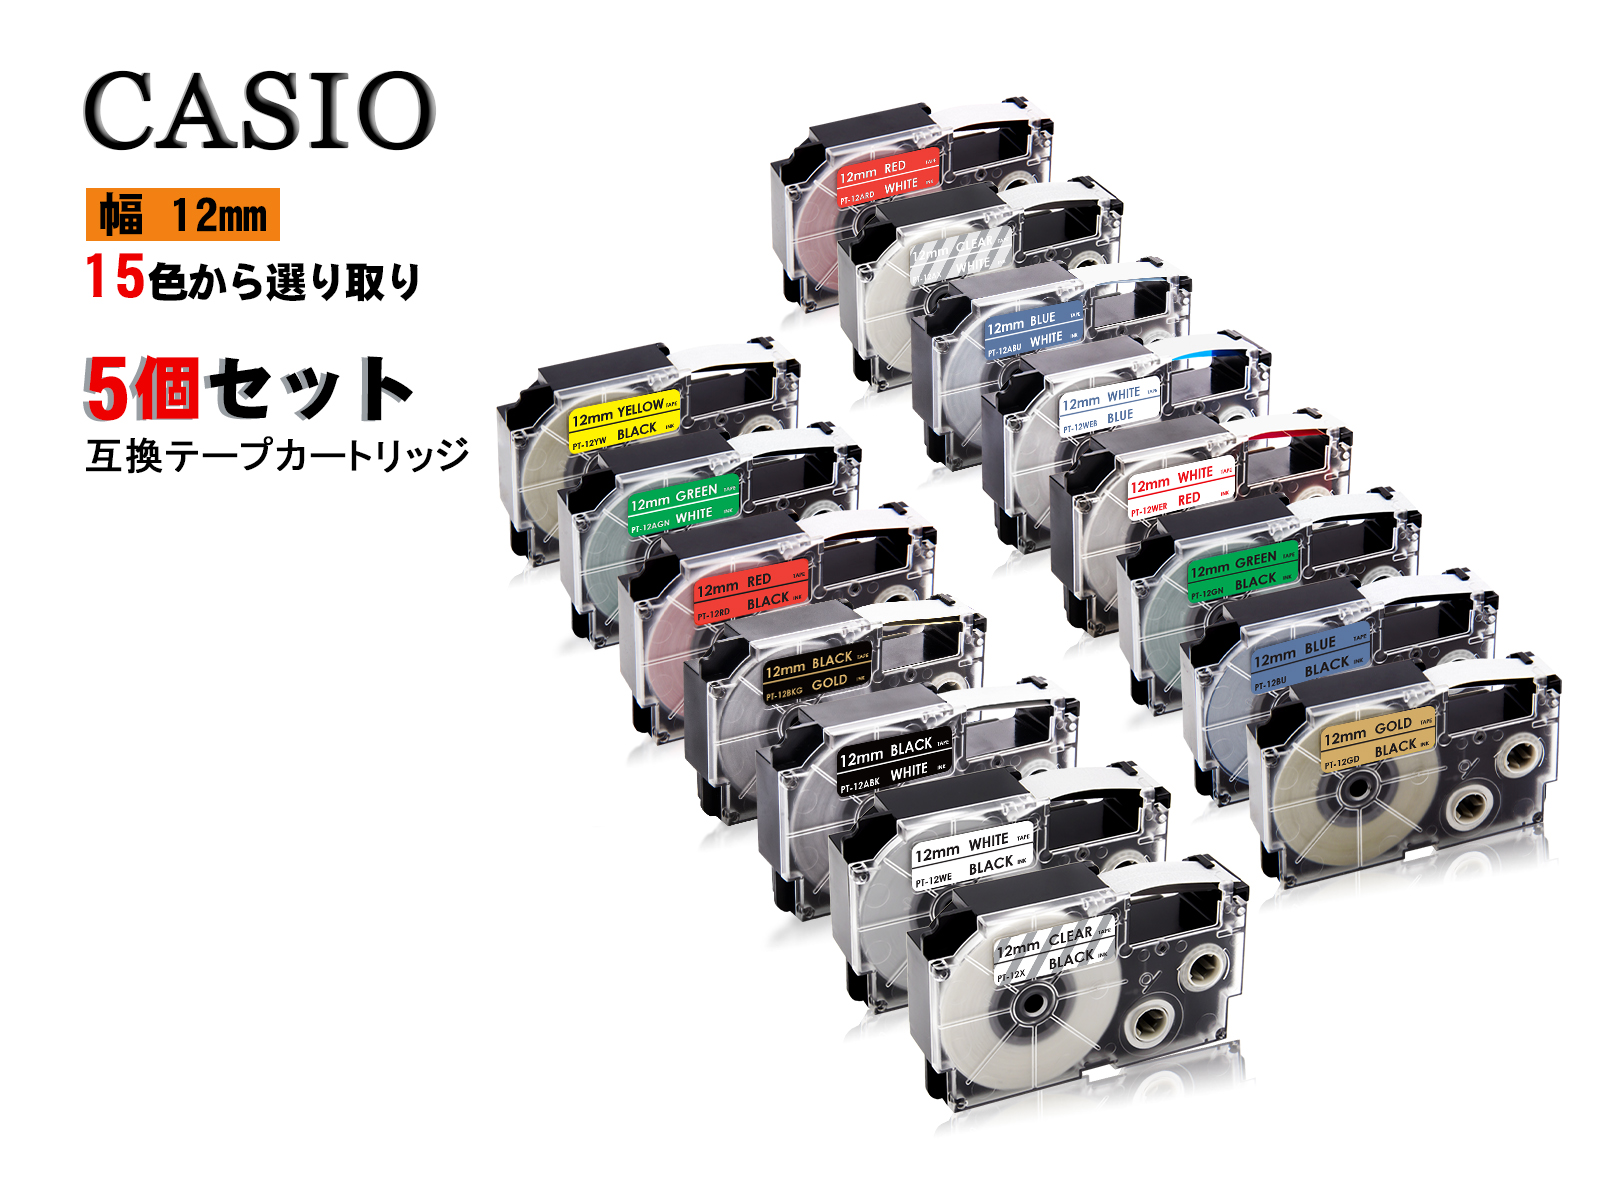 【楽天市場】Casio casio カシオ ネームランド 互換テープ 